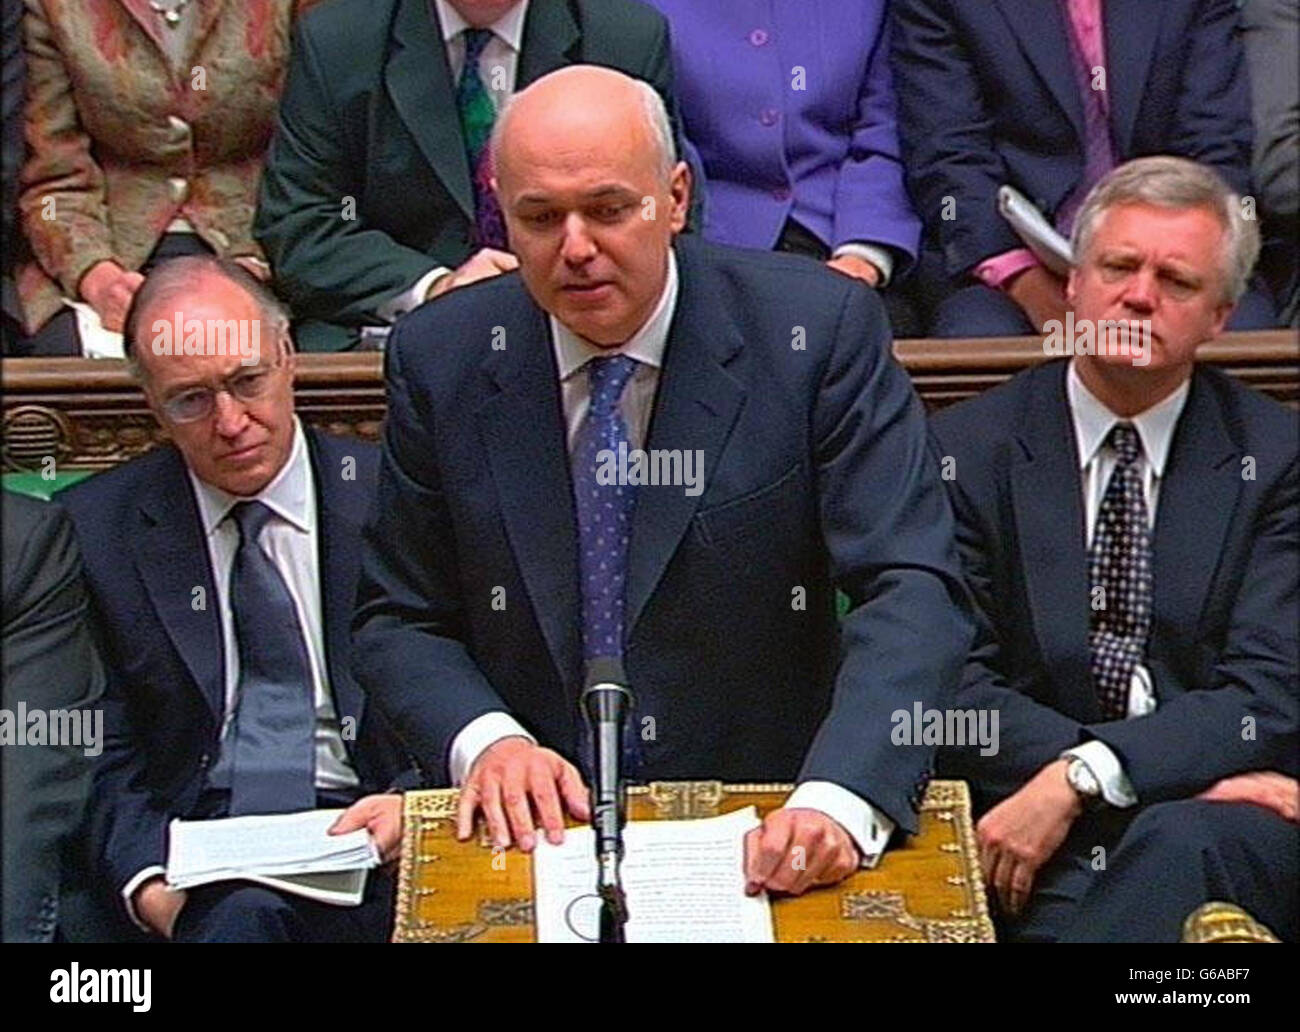 Capture d'écran du chef de l'opposition, Iain Duncan Smith, parlant à la Chambre des communes, à Londres, pendant les questions du premier ministre. Banque D'Images